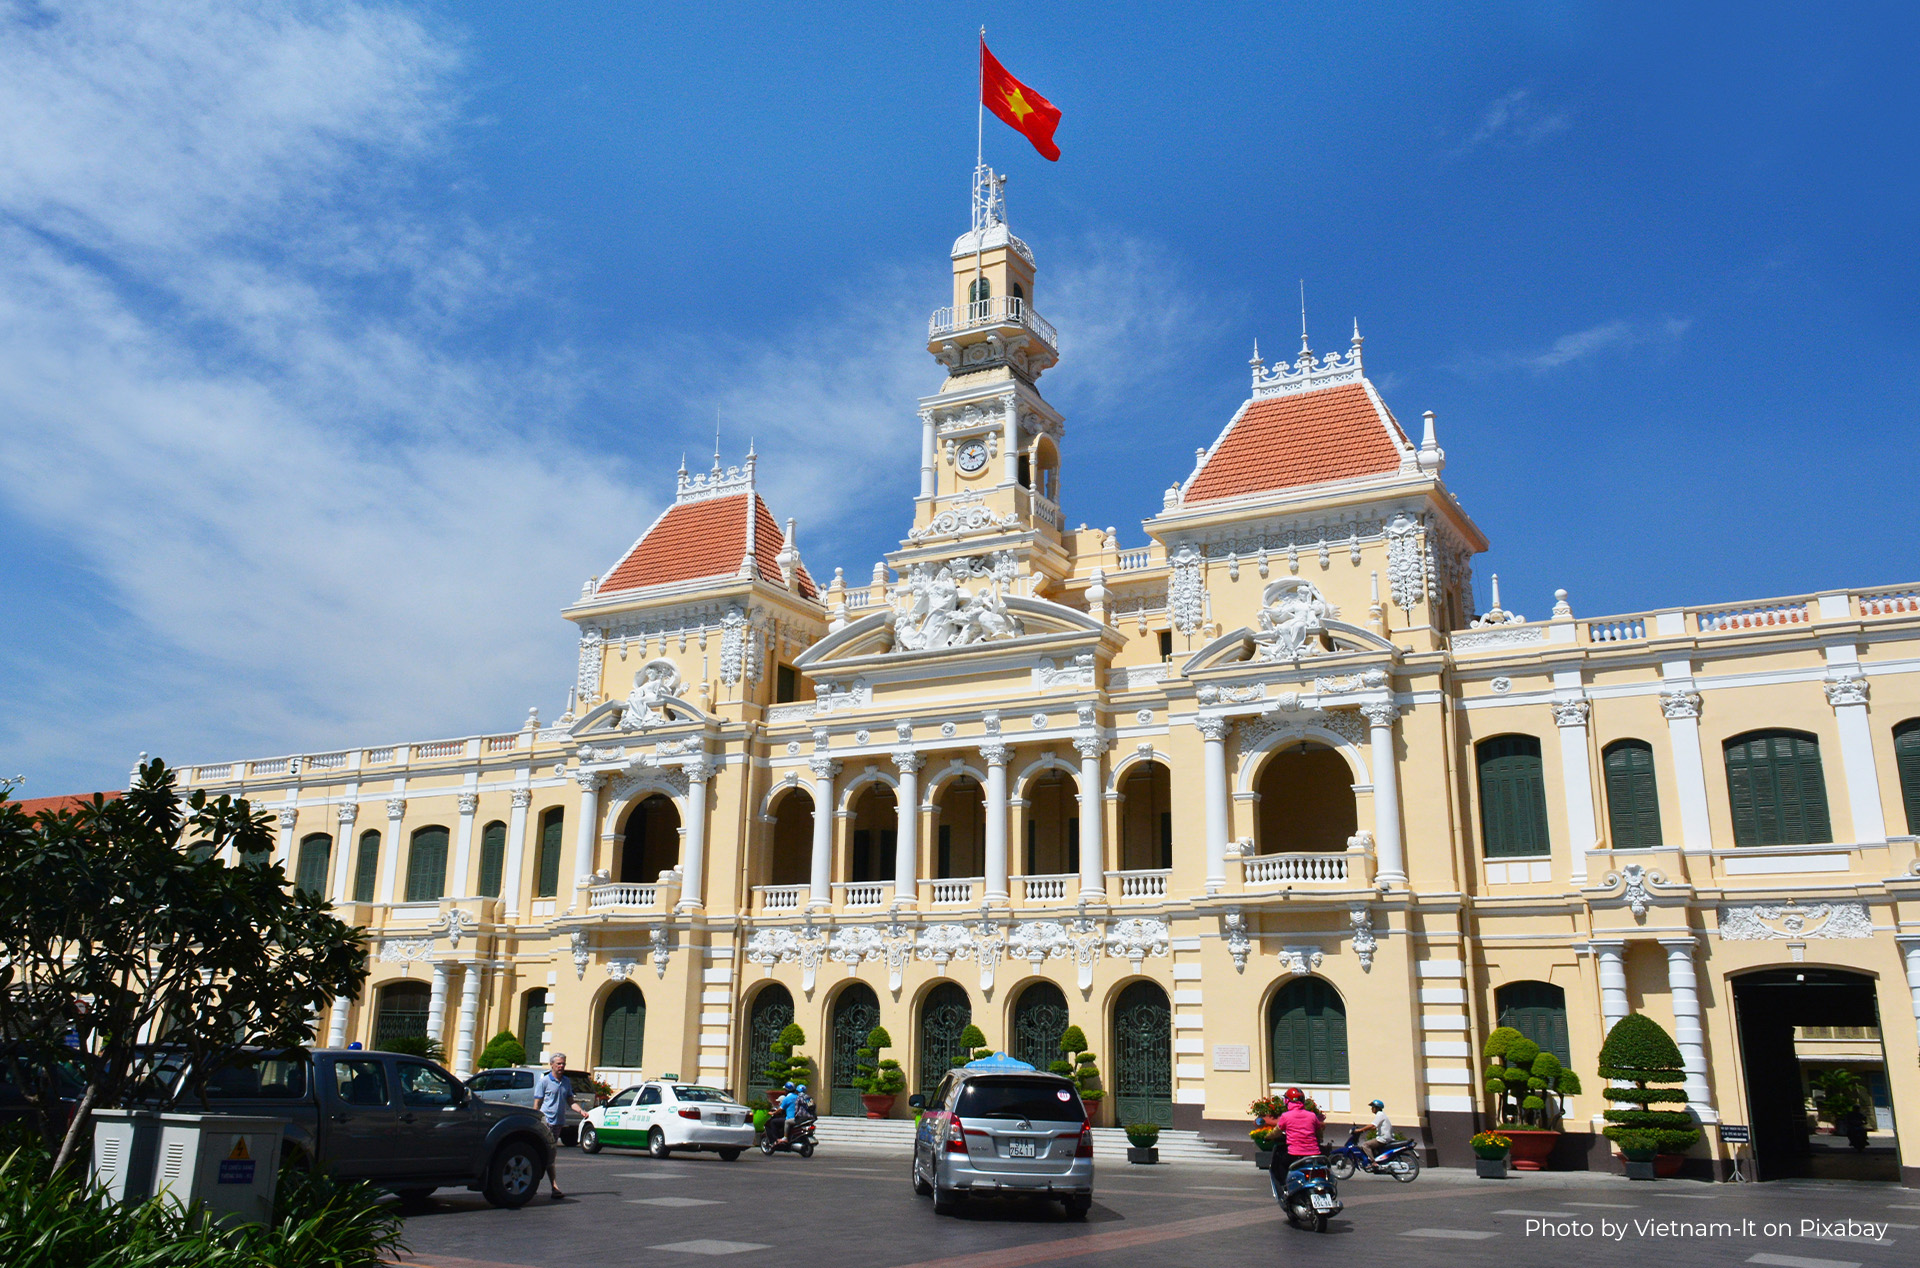 Giới thiệu về top 10 điểm du lịch miễn phí ở Thành phố Hồ Chí Minh, mang đến cho du khách những trải nghiệm thú vị mà không tốn phí.